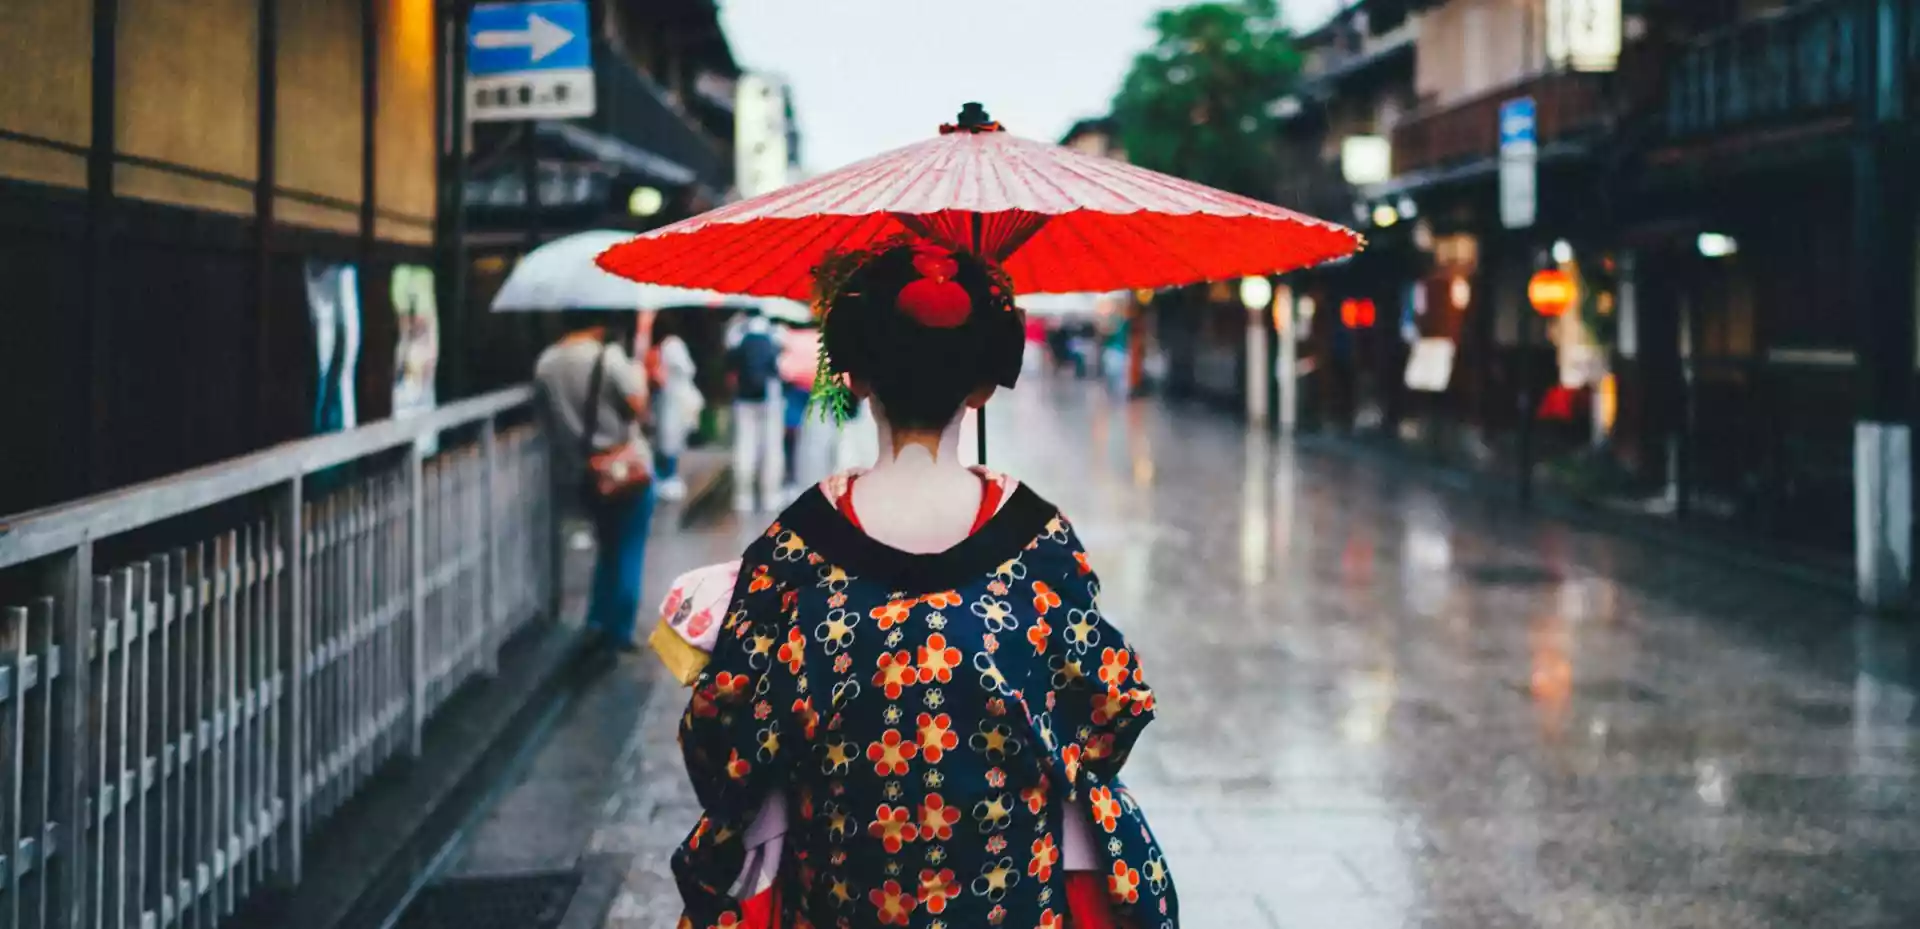 En kvinne med en rød paraply går gjennom en japansk gate i regnværet. Hun står med ryggen til kameraet, og paraplyen skaper et levende fokus mot det omkringliggende landskapet.